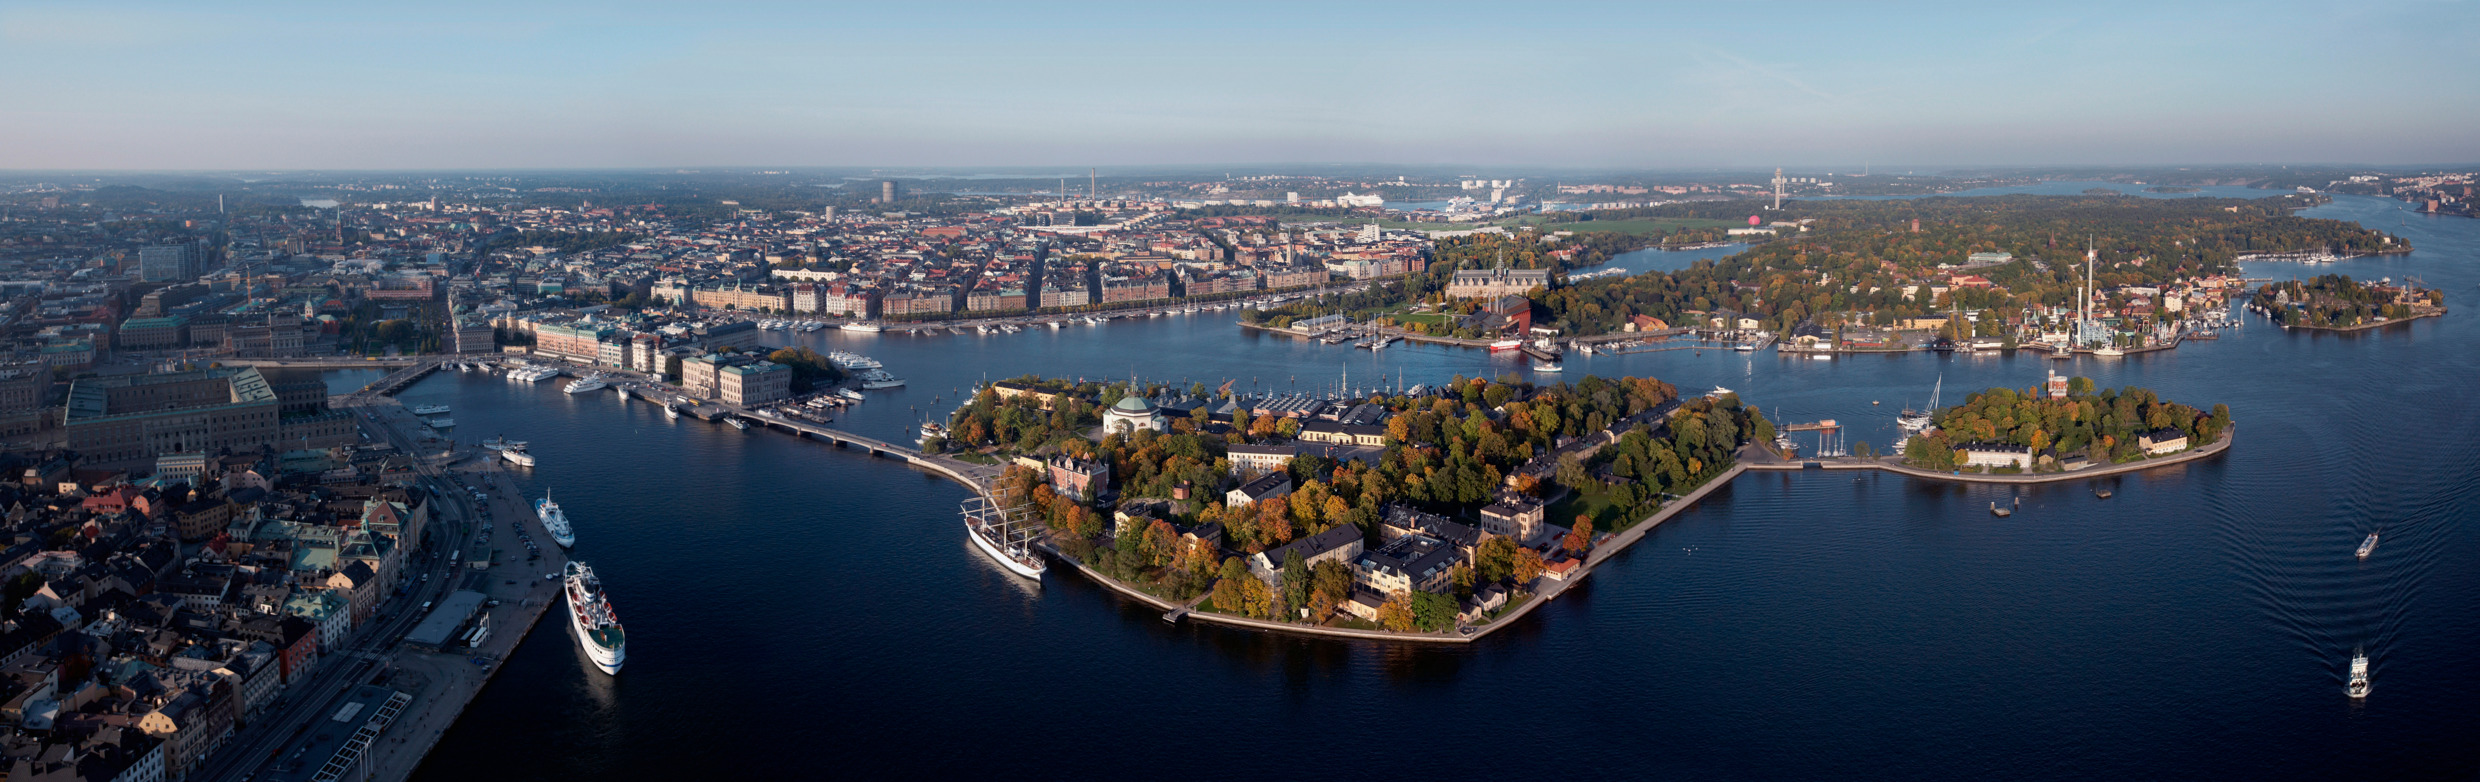 Vu aérienne de Stockholm